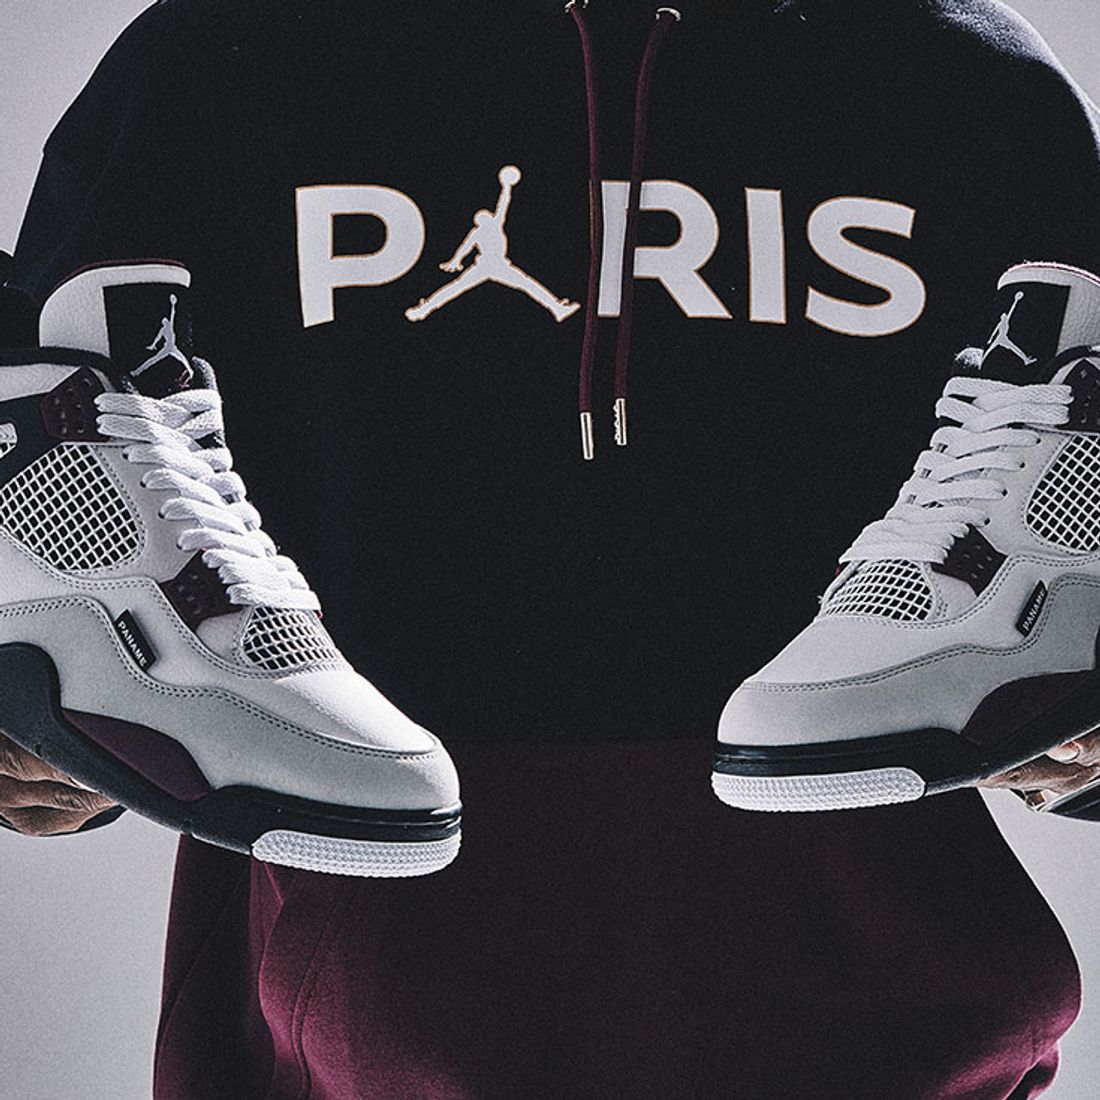 PSG drop brand-new Nike Jordan fourth kit